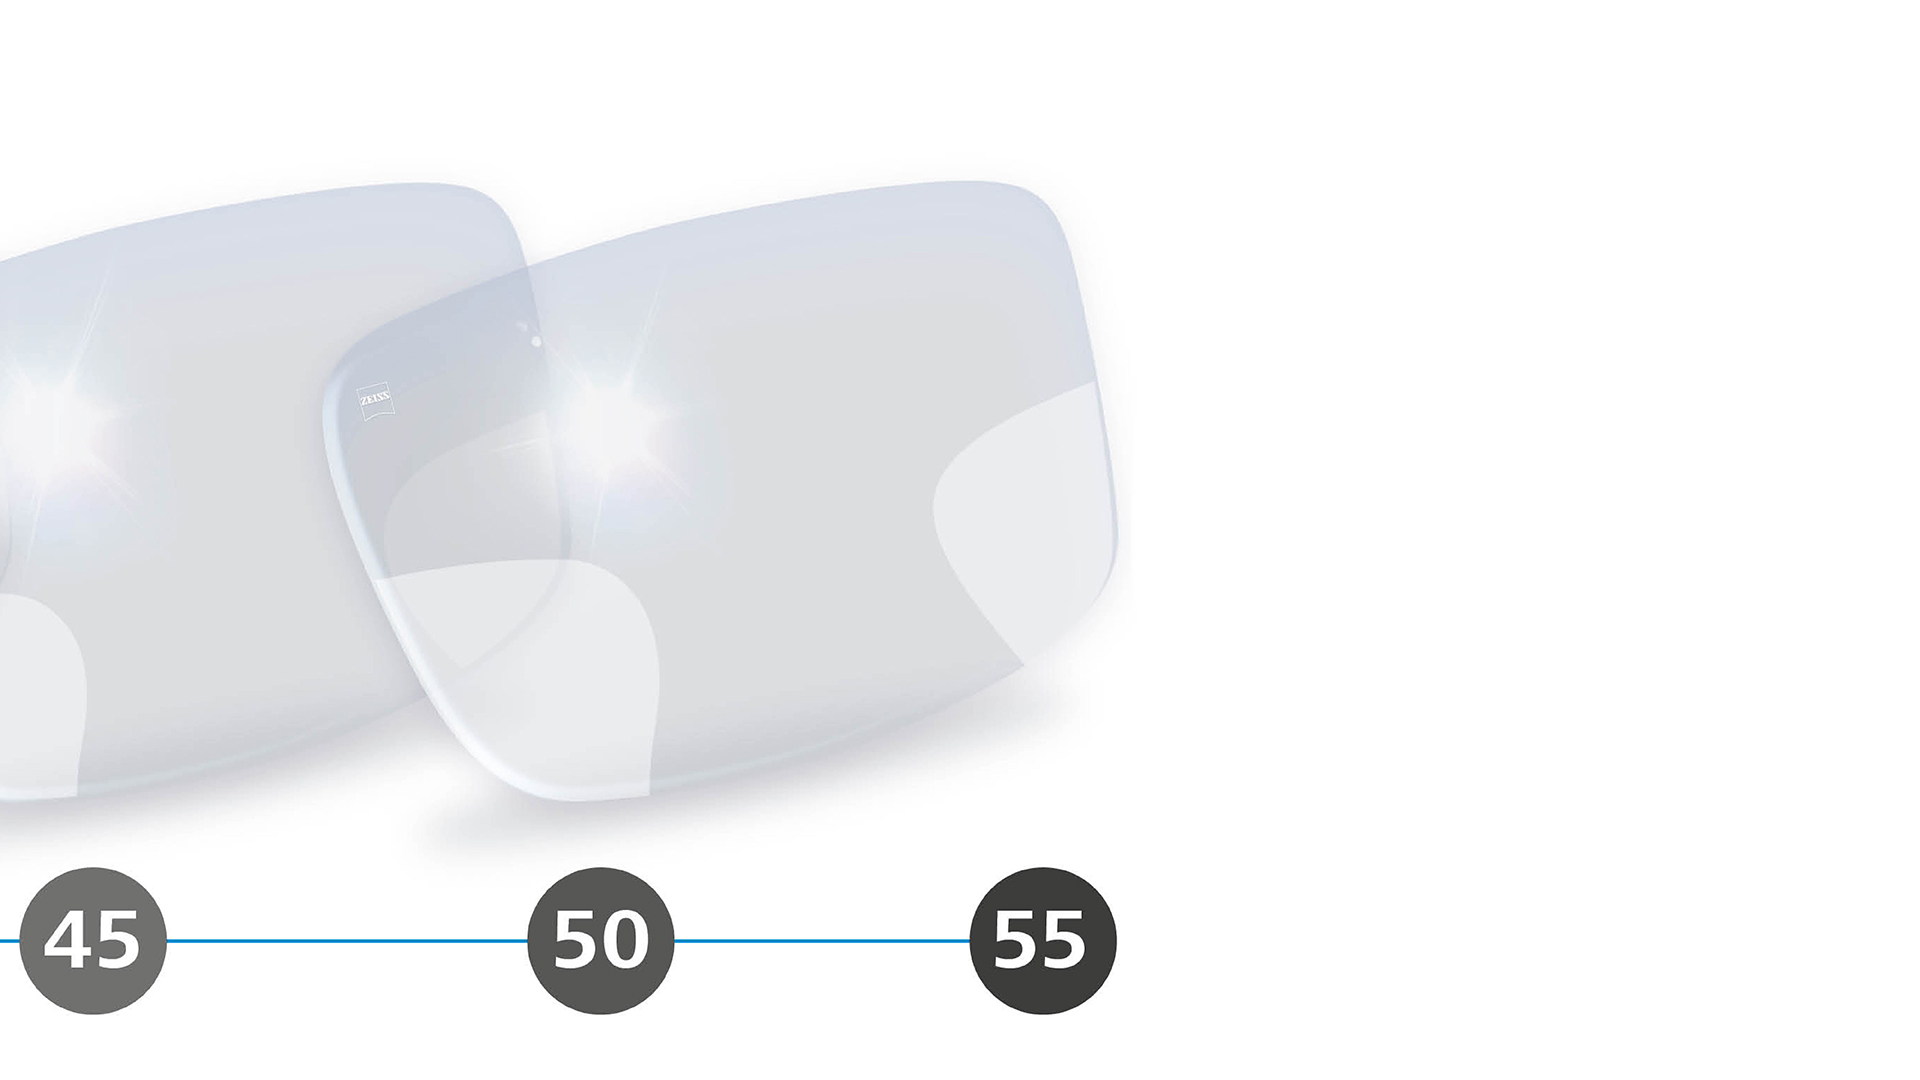 Ilustração em 3D de lentes progressivas com zonas periféricas desfocadas para usuários a partir dos 40 anos.